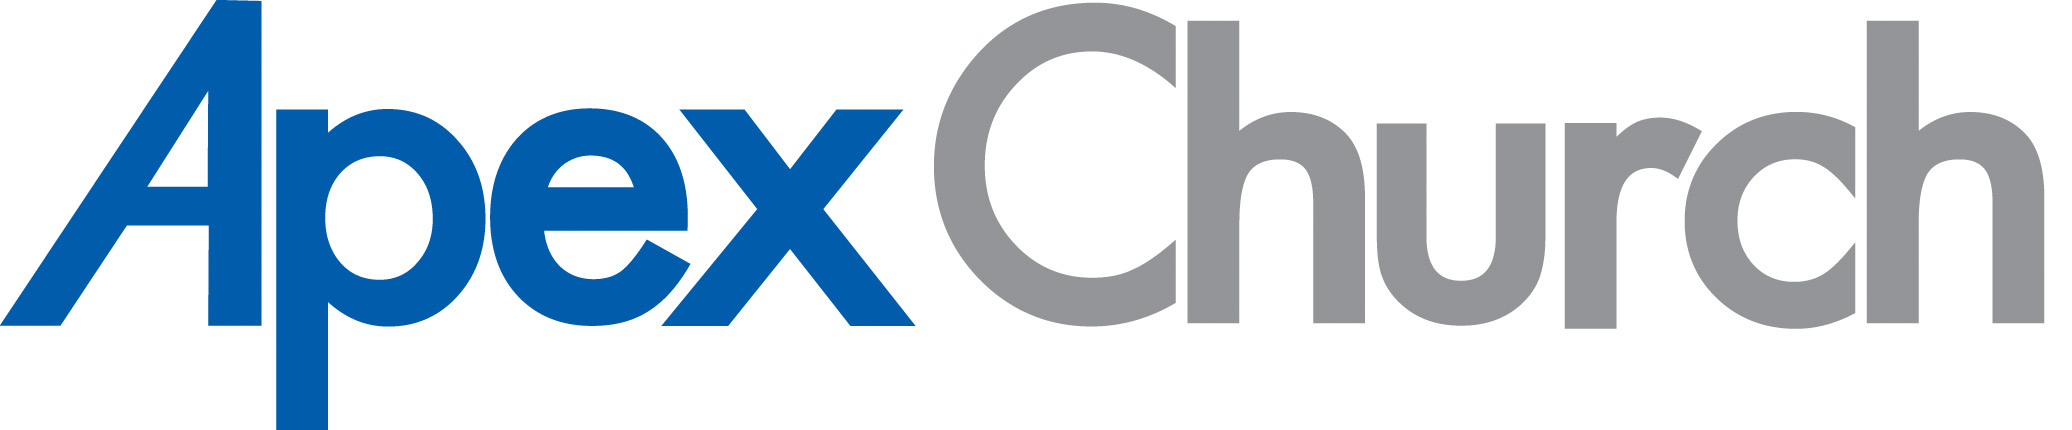 Apex Church Logo